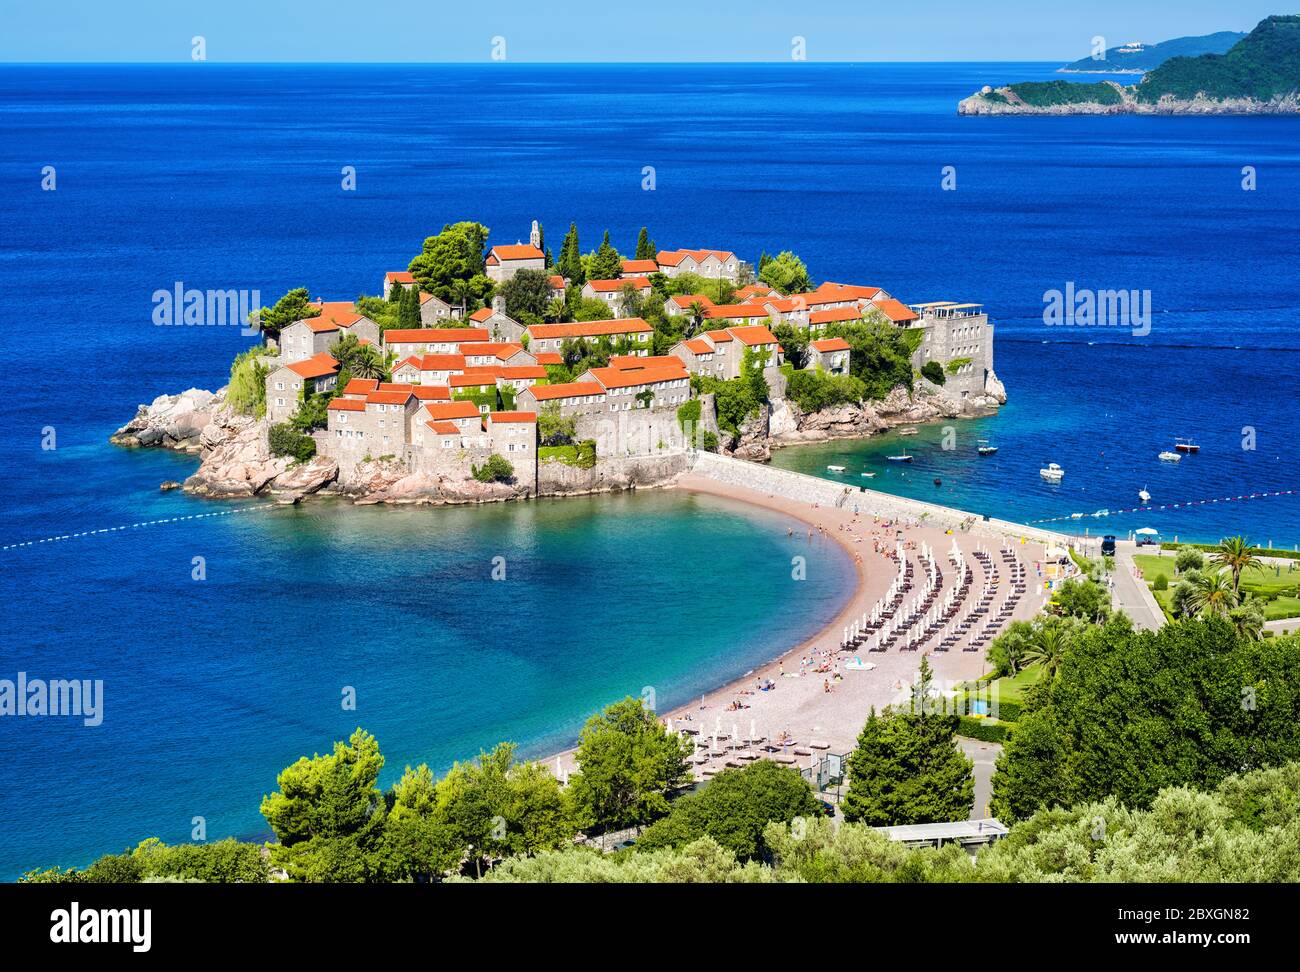 Sveti Stefan, ville historique de l'île, Budva, Monténégro, une station balnéaire populaire sur la côte Adriatique de la mer Méditerranée célèbre pour sa plage de sable rose Banque D'Images